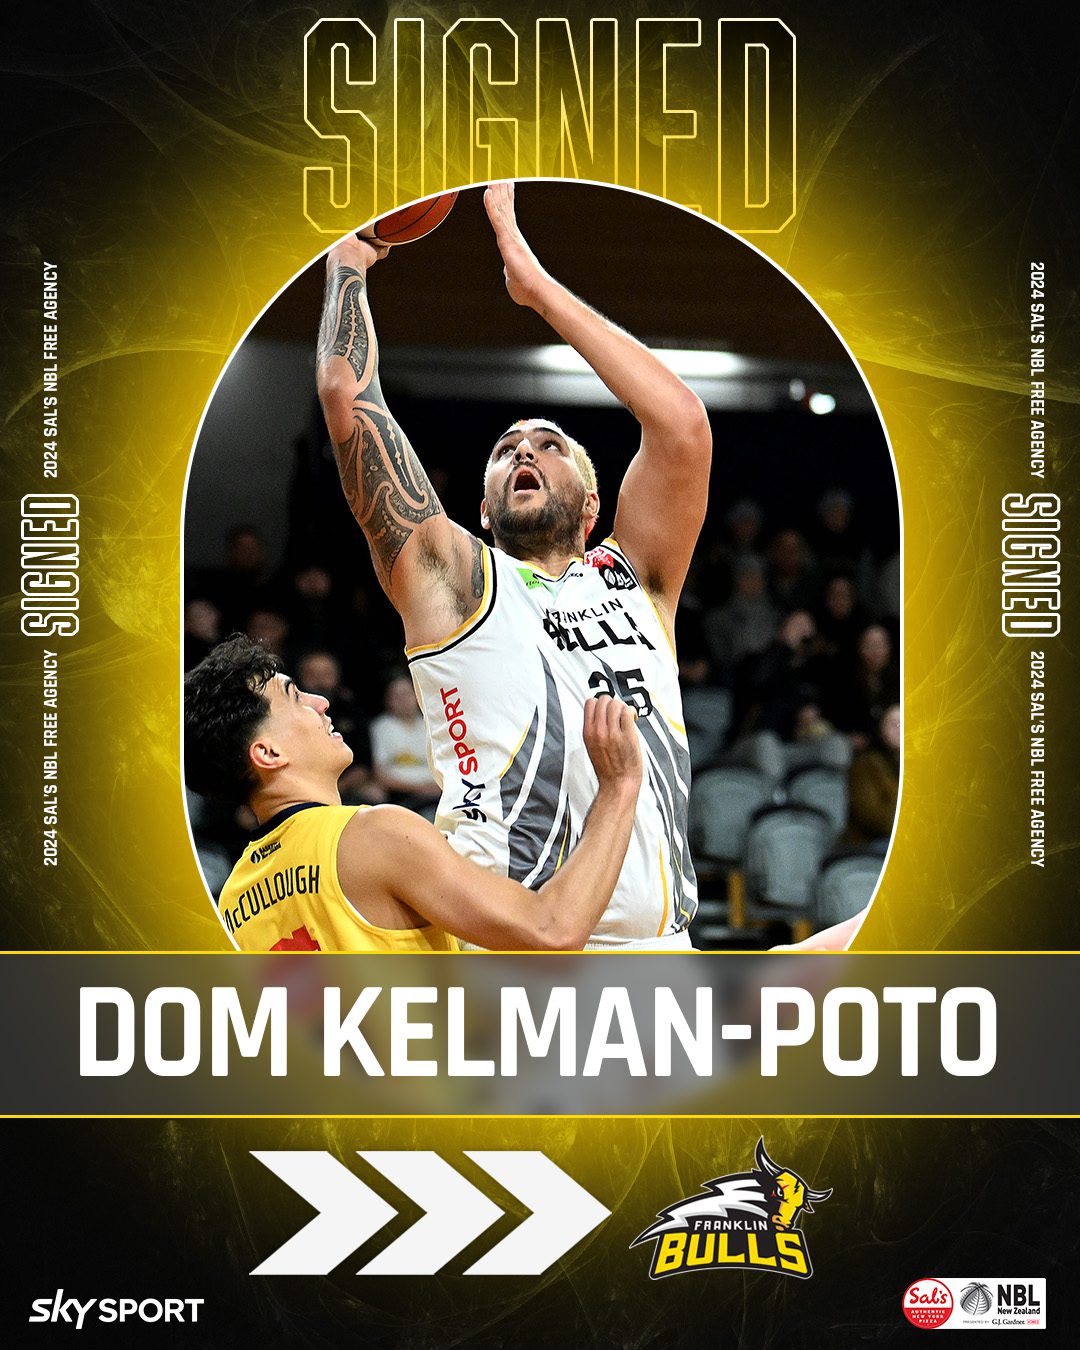 Dom Kelman-Poto